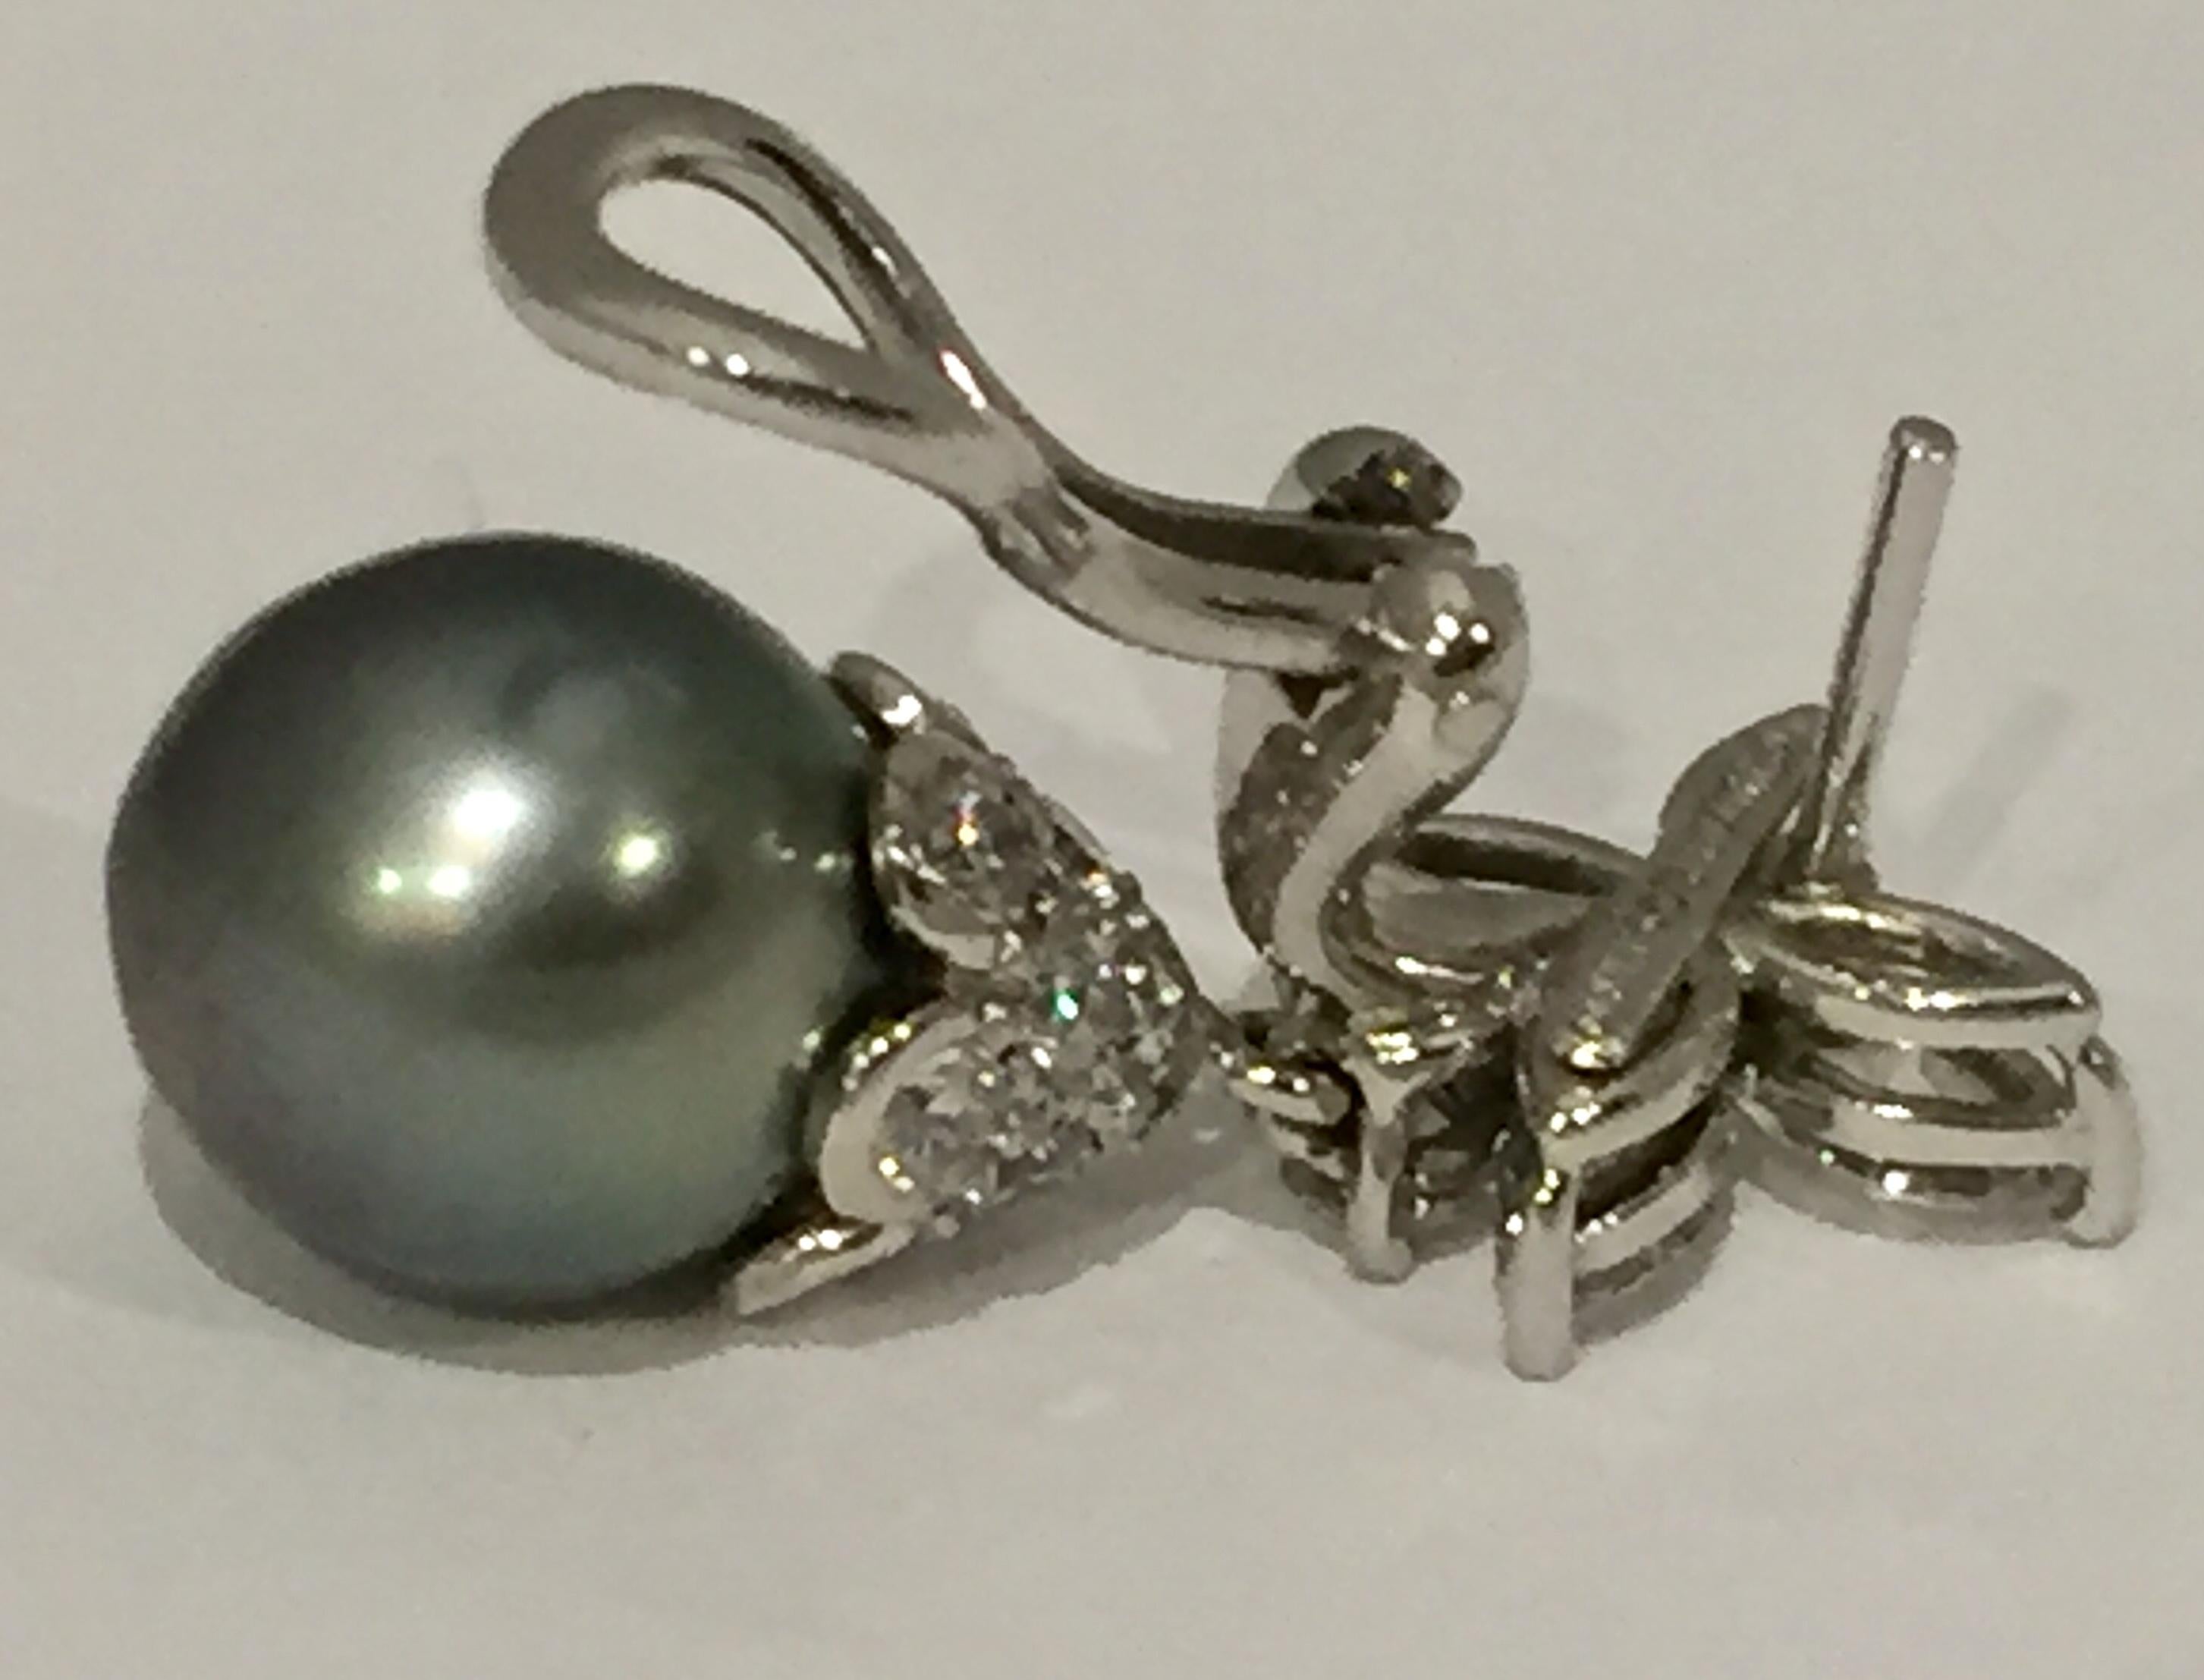 tiffany black pearl earrings